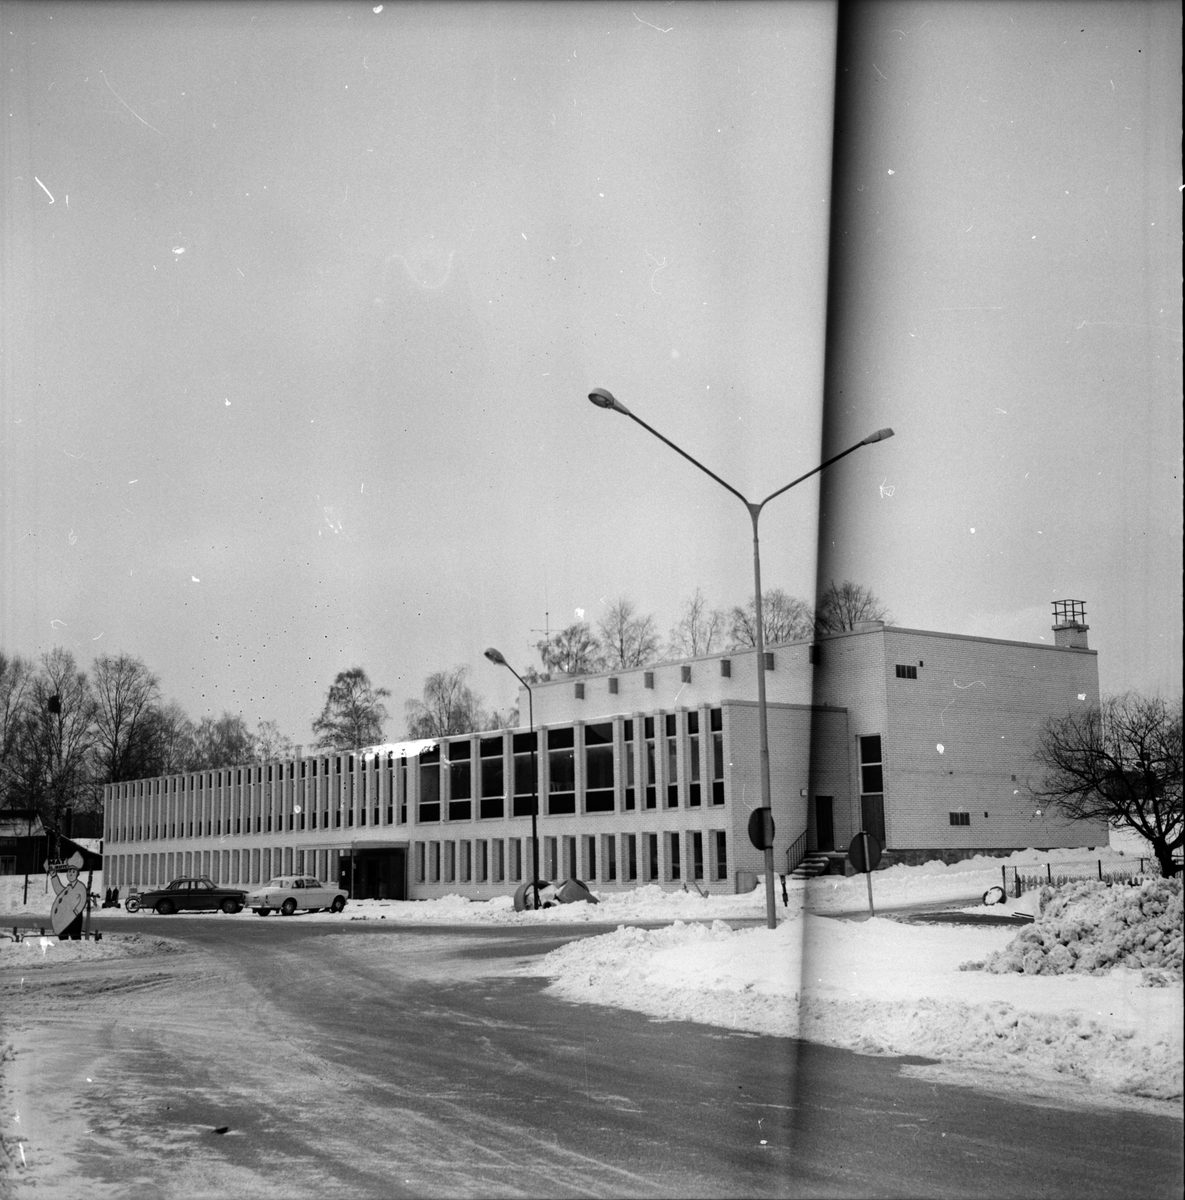 Arbrå,
Forum skall invigas,
April 1970